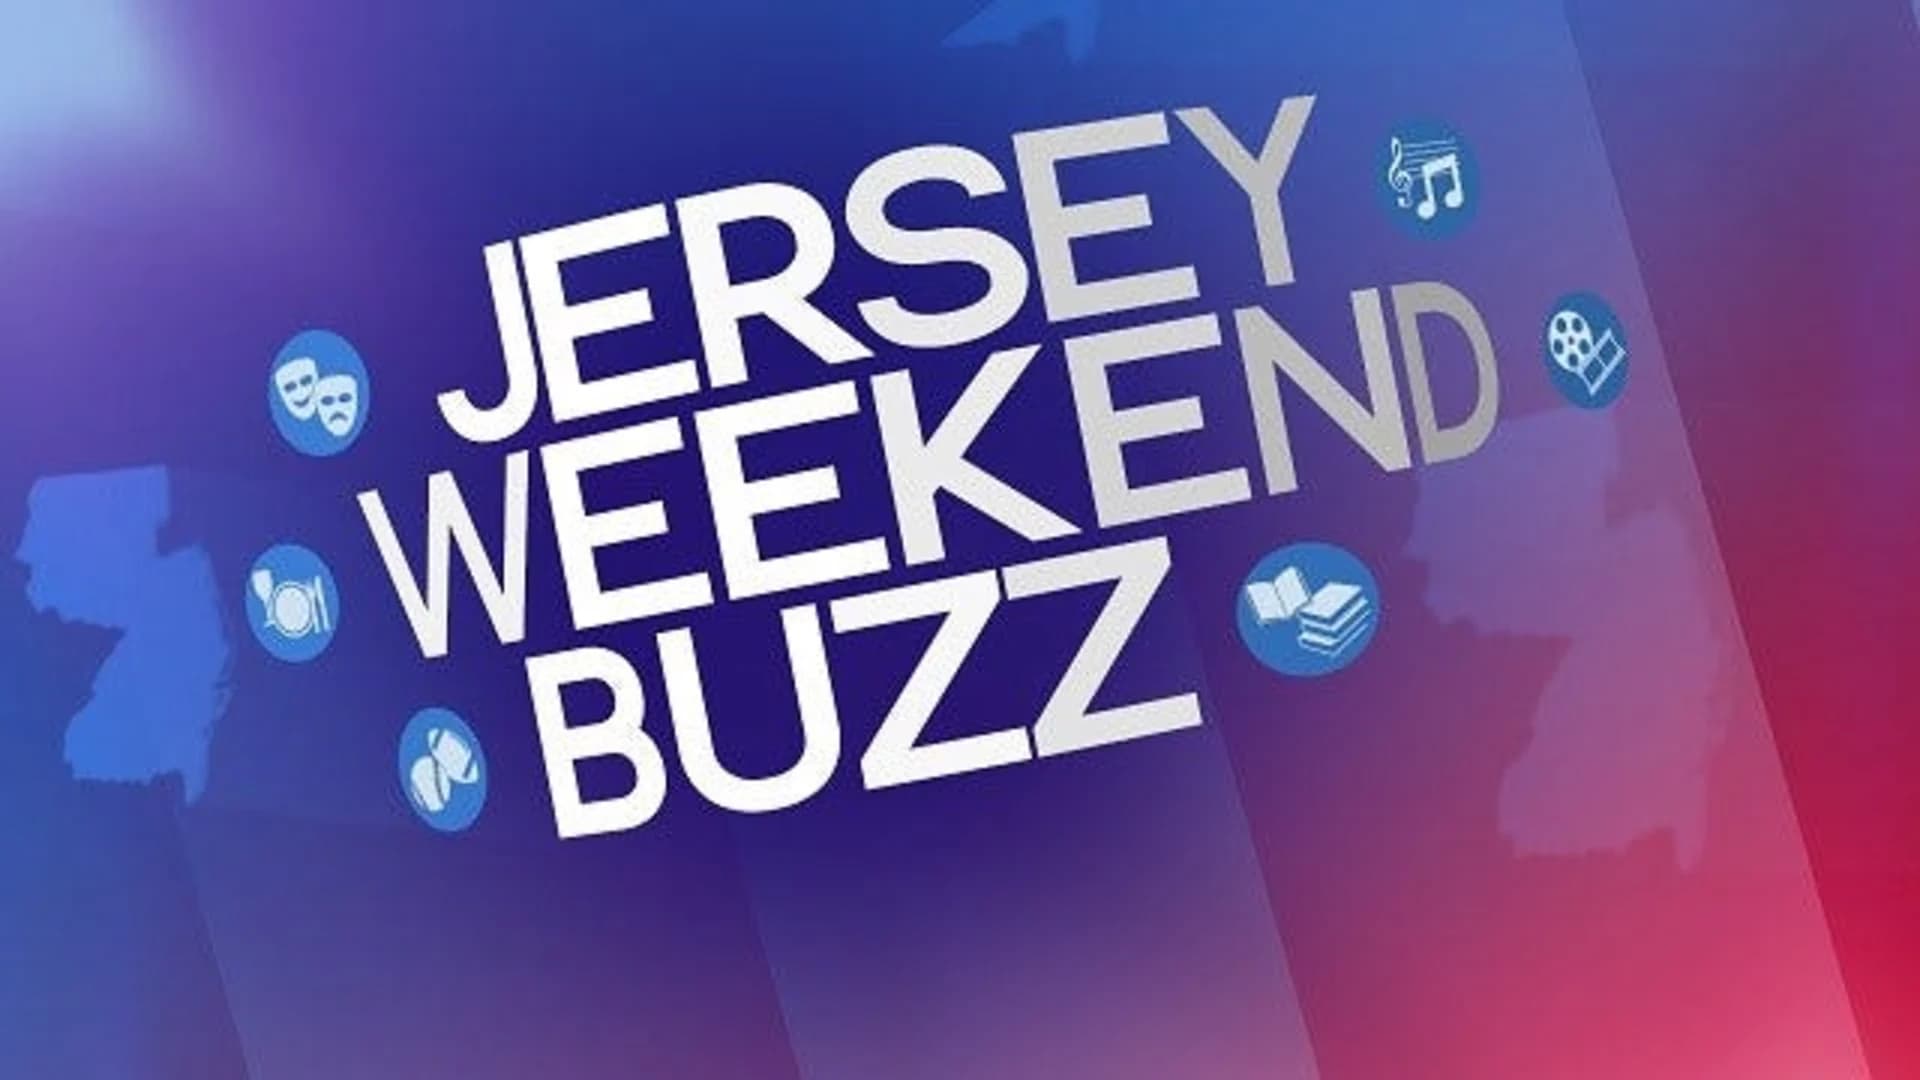 Jersey Weekend Buzz: Feb. 9-11, 2018